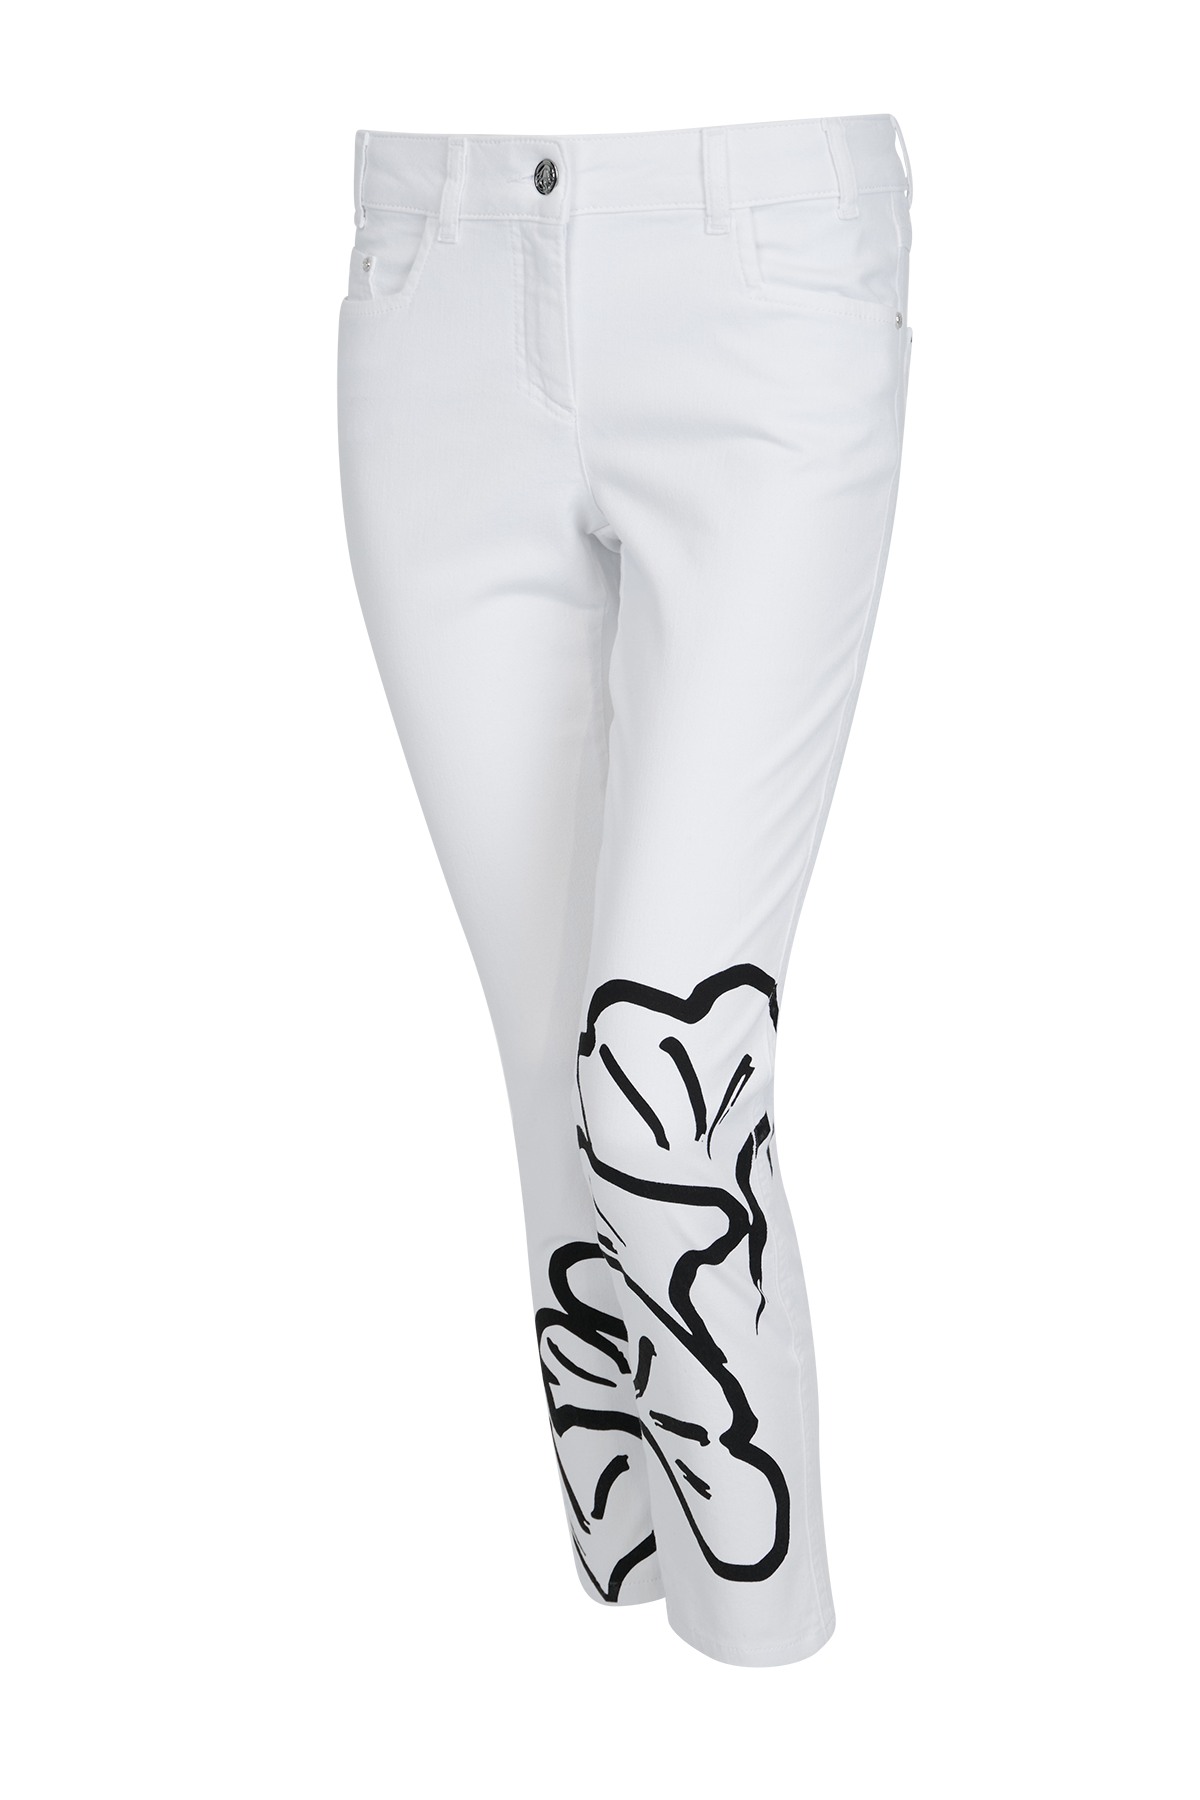 Sportalm kalhoty Valery bright white Velikost: 34